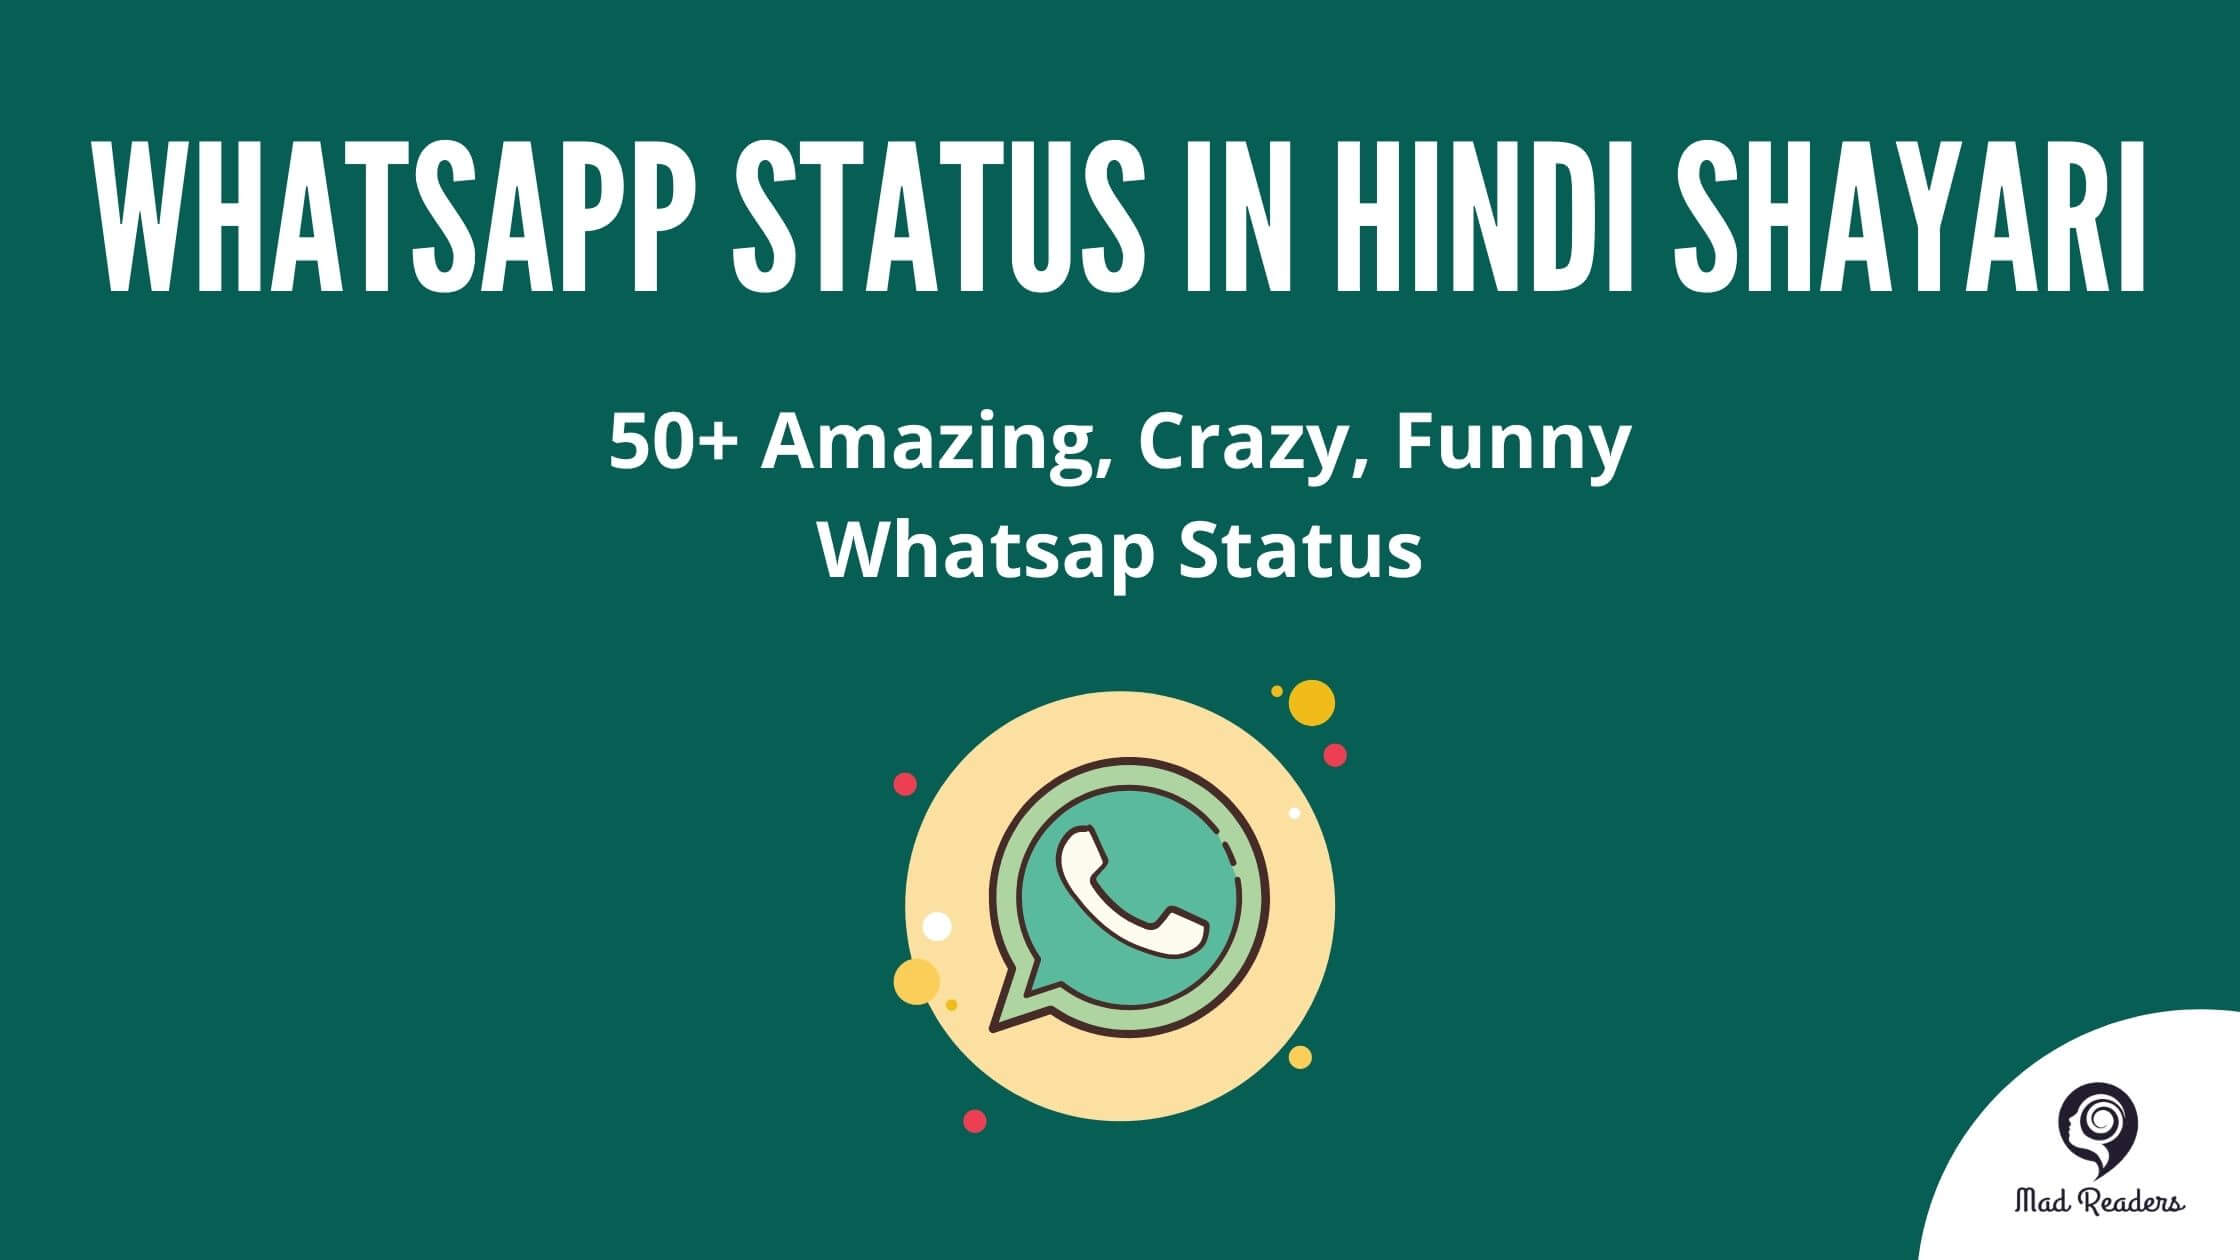 whatsapp status in hindi shayari